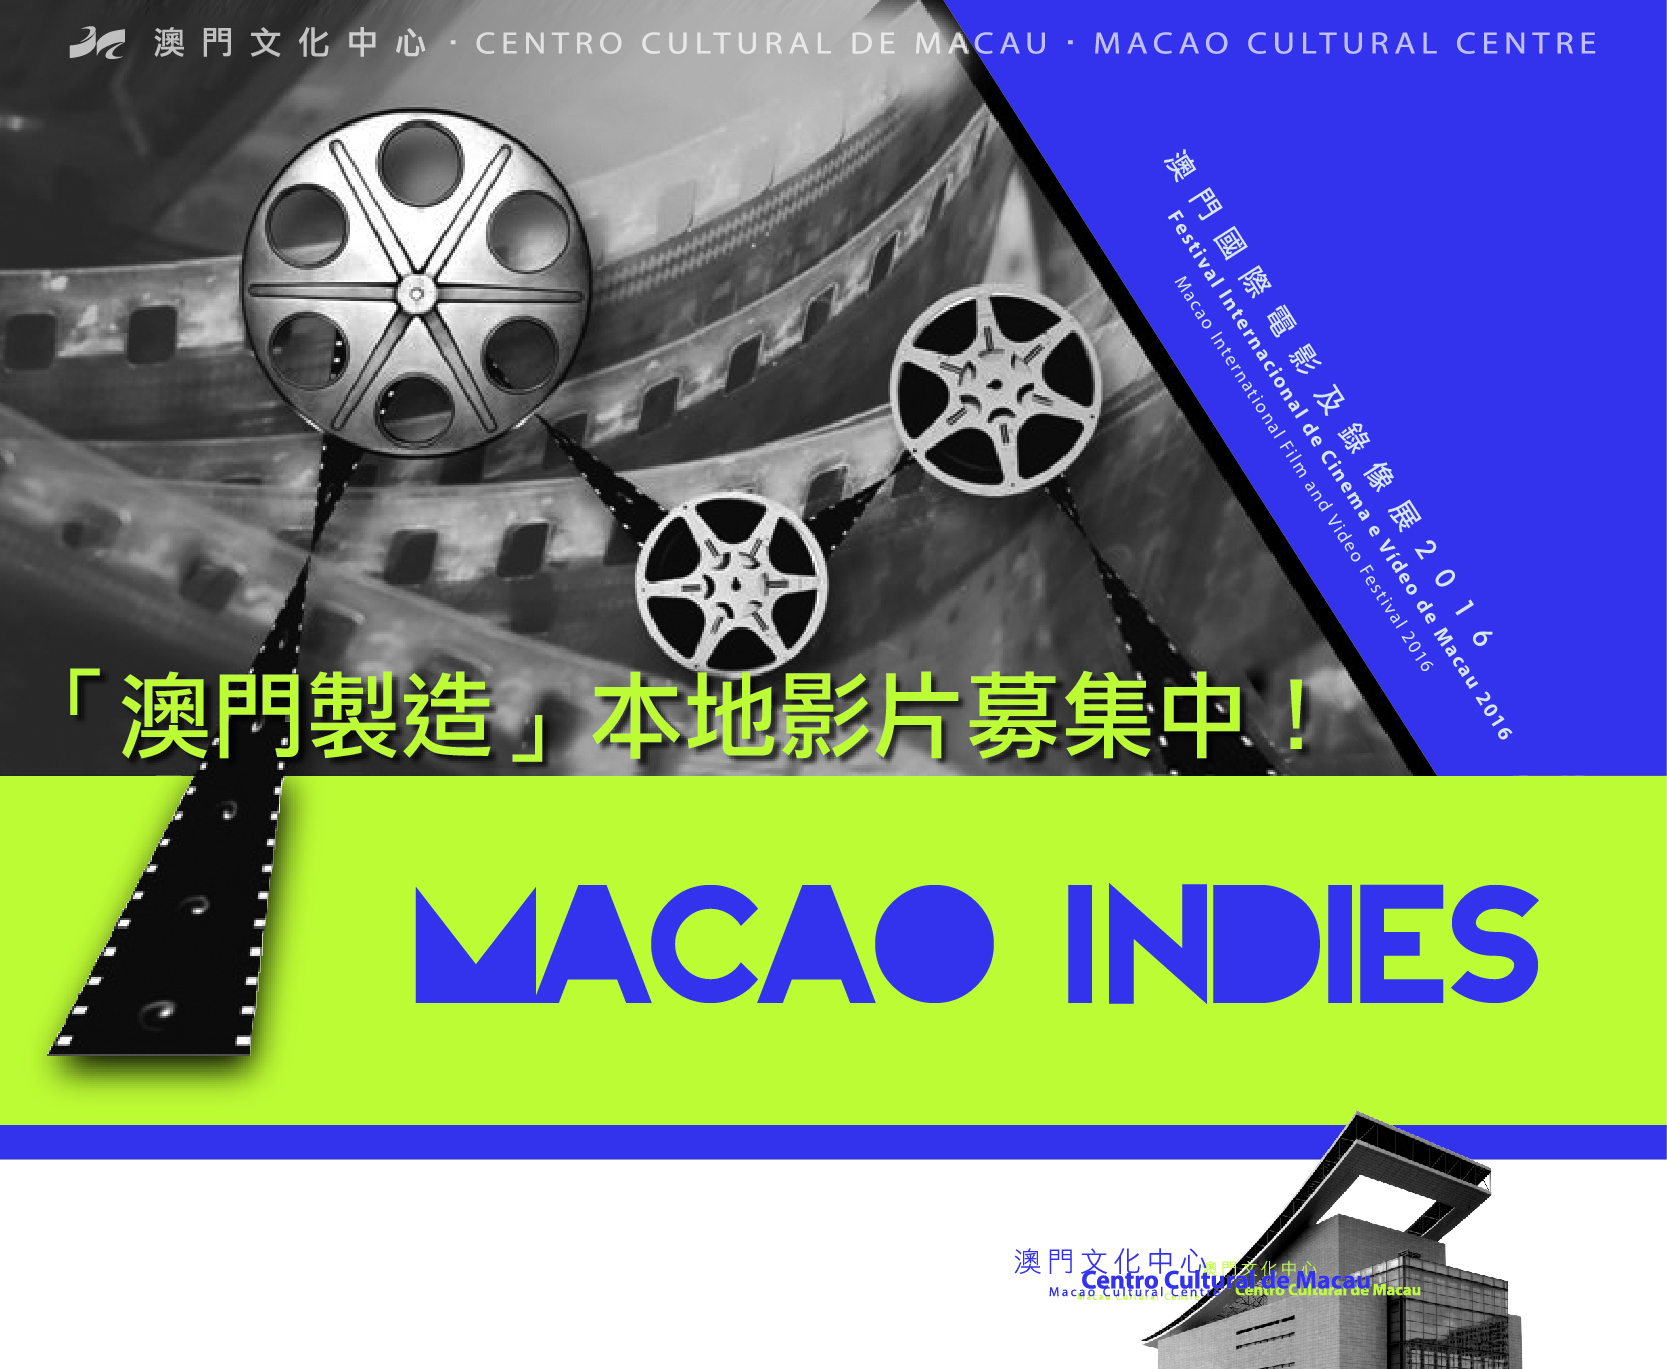 Macao Indies | Novas candidaturas já estão abertas